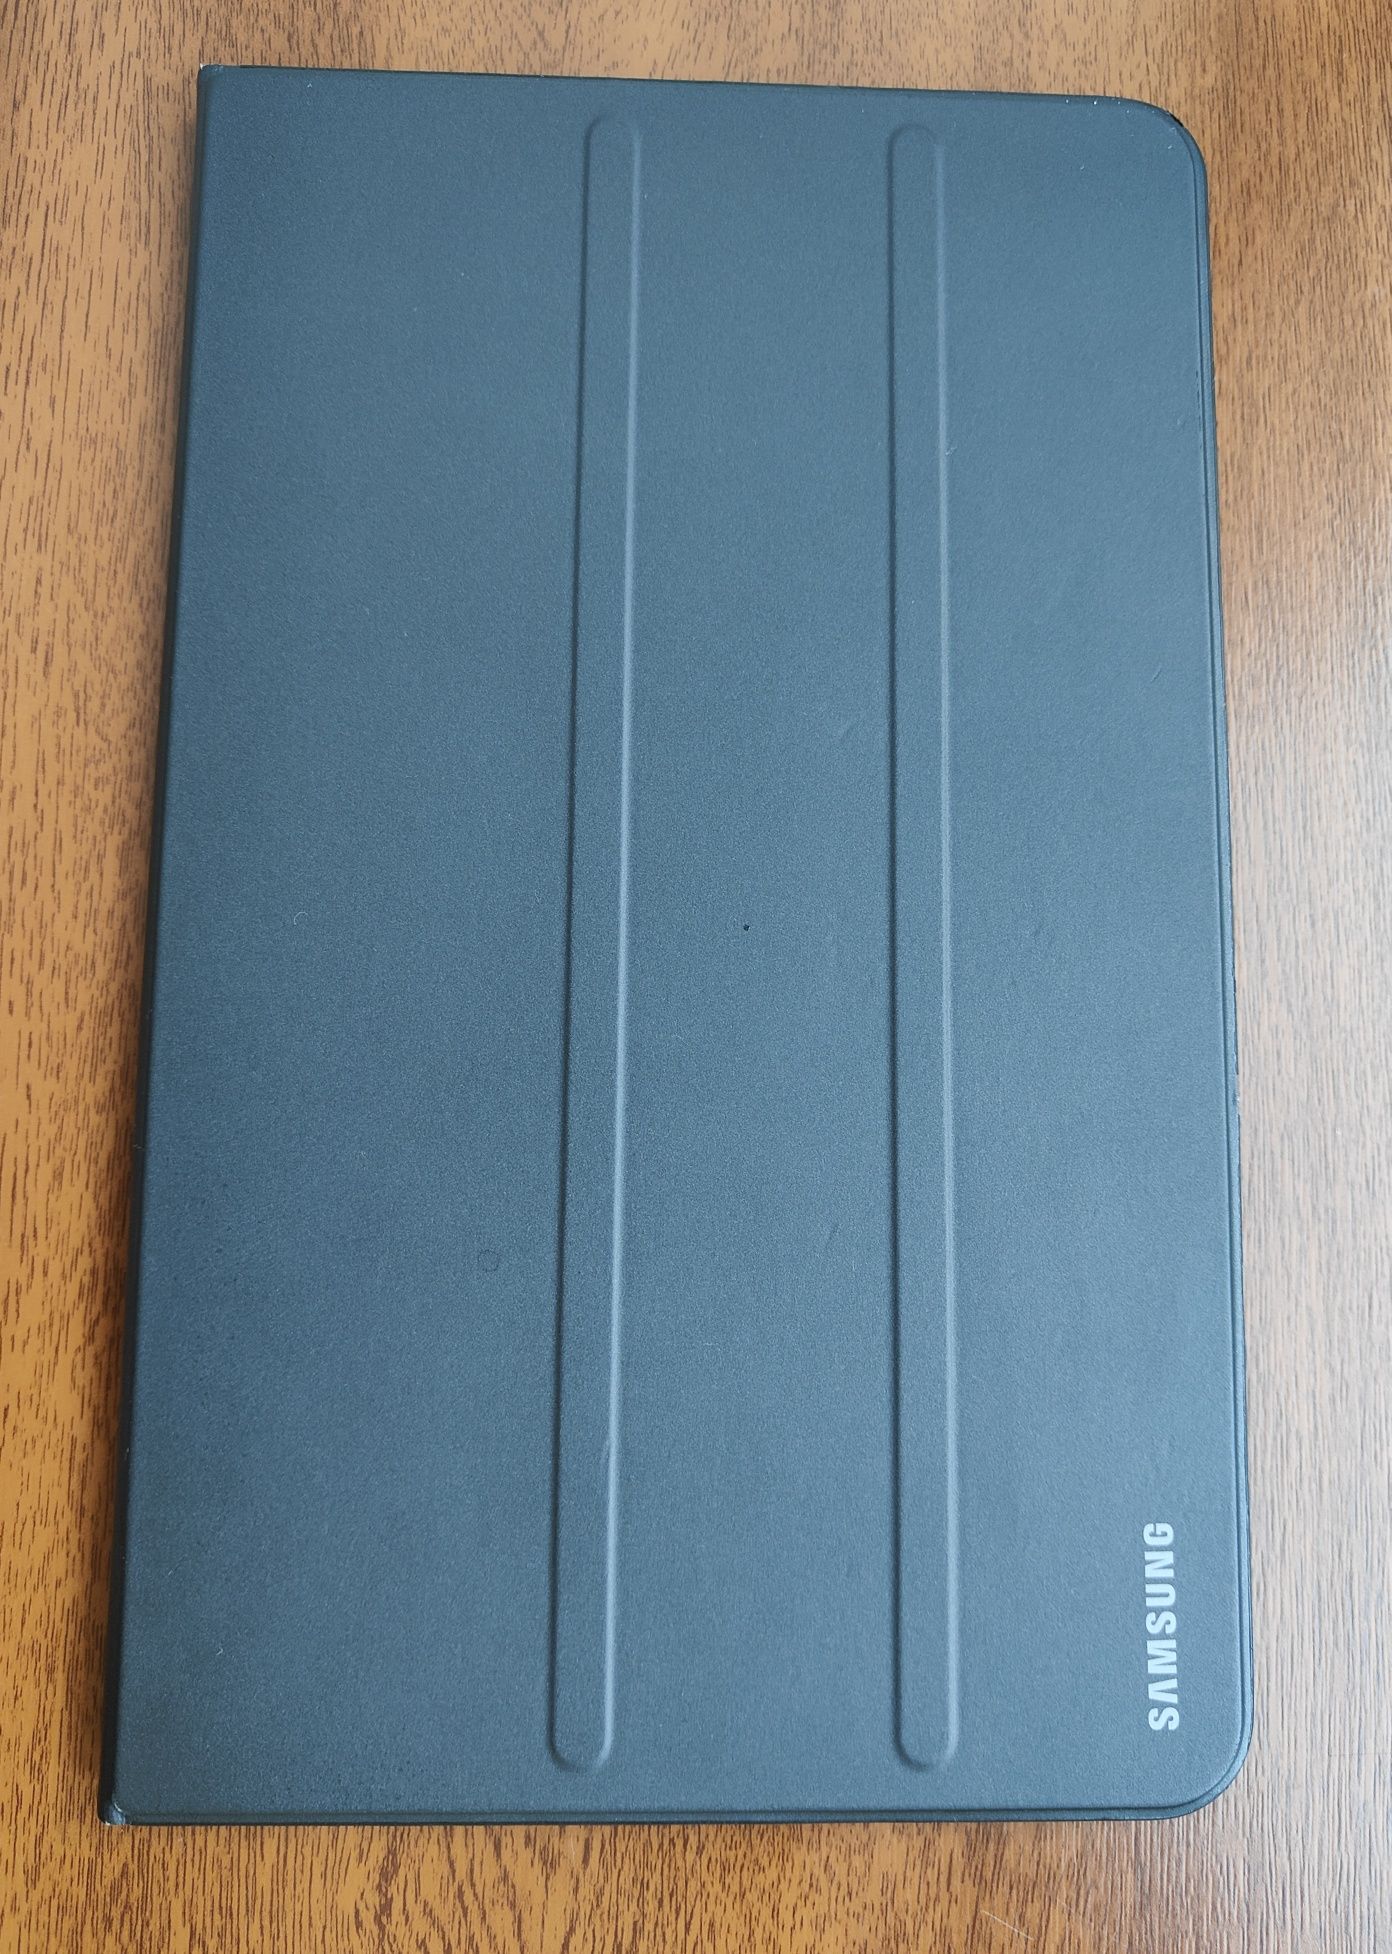 Планшет Samsung Galaxy Tab A 10.1 16GB LTE Black (SM-T585)